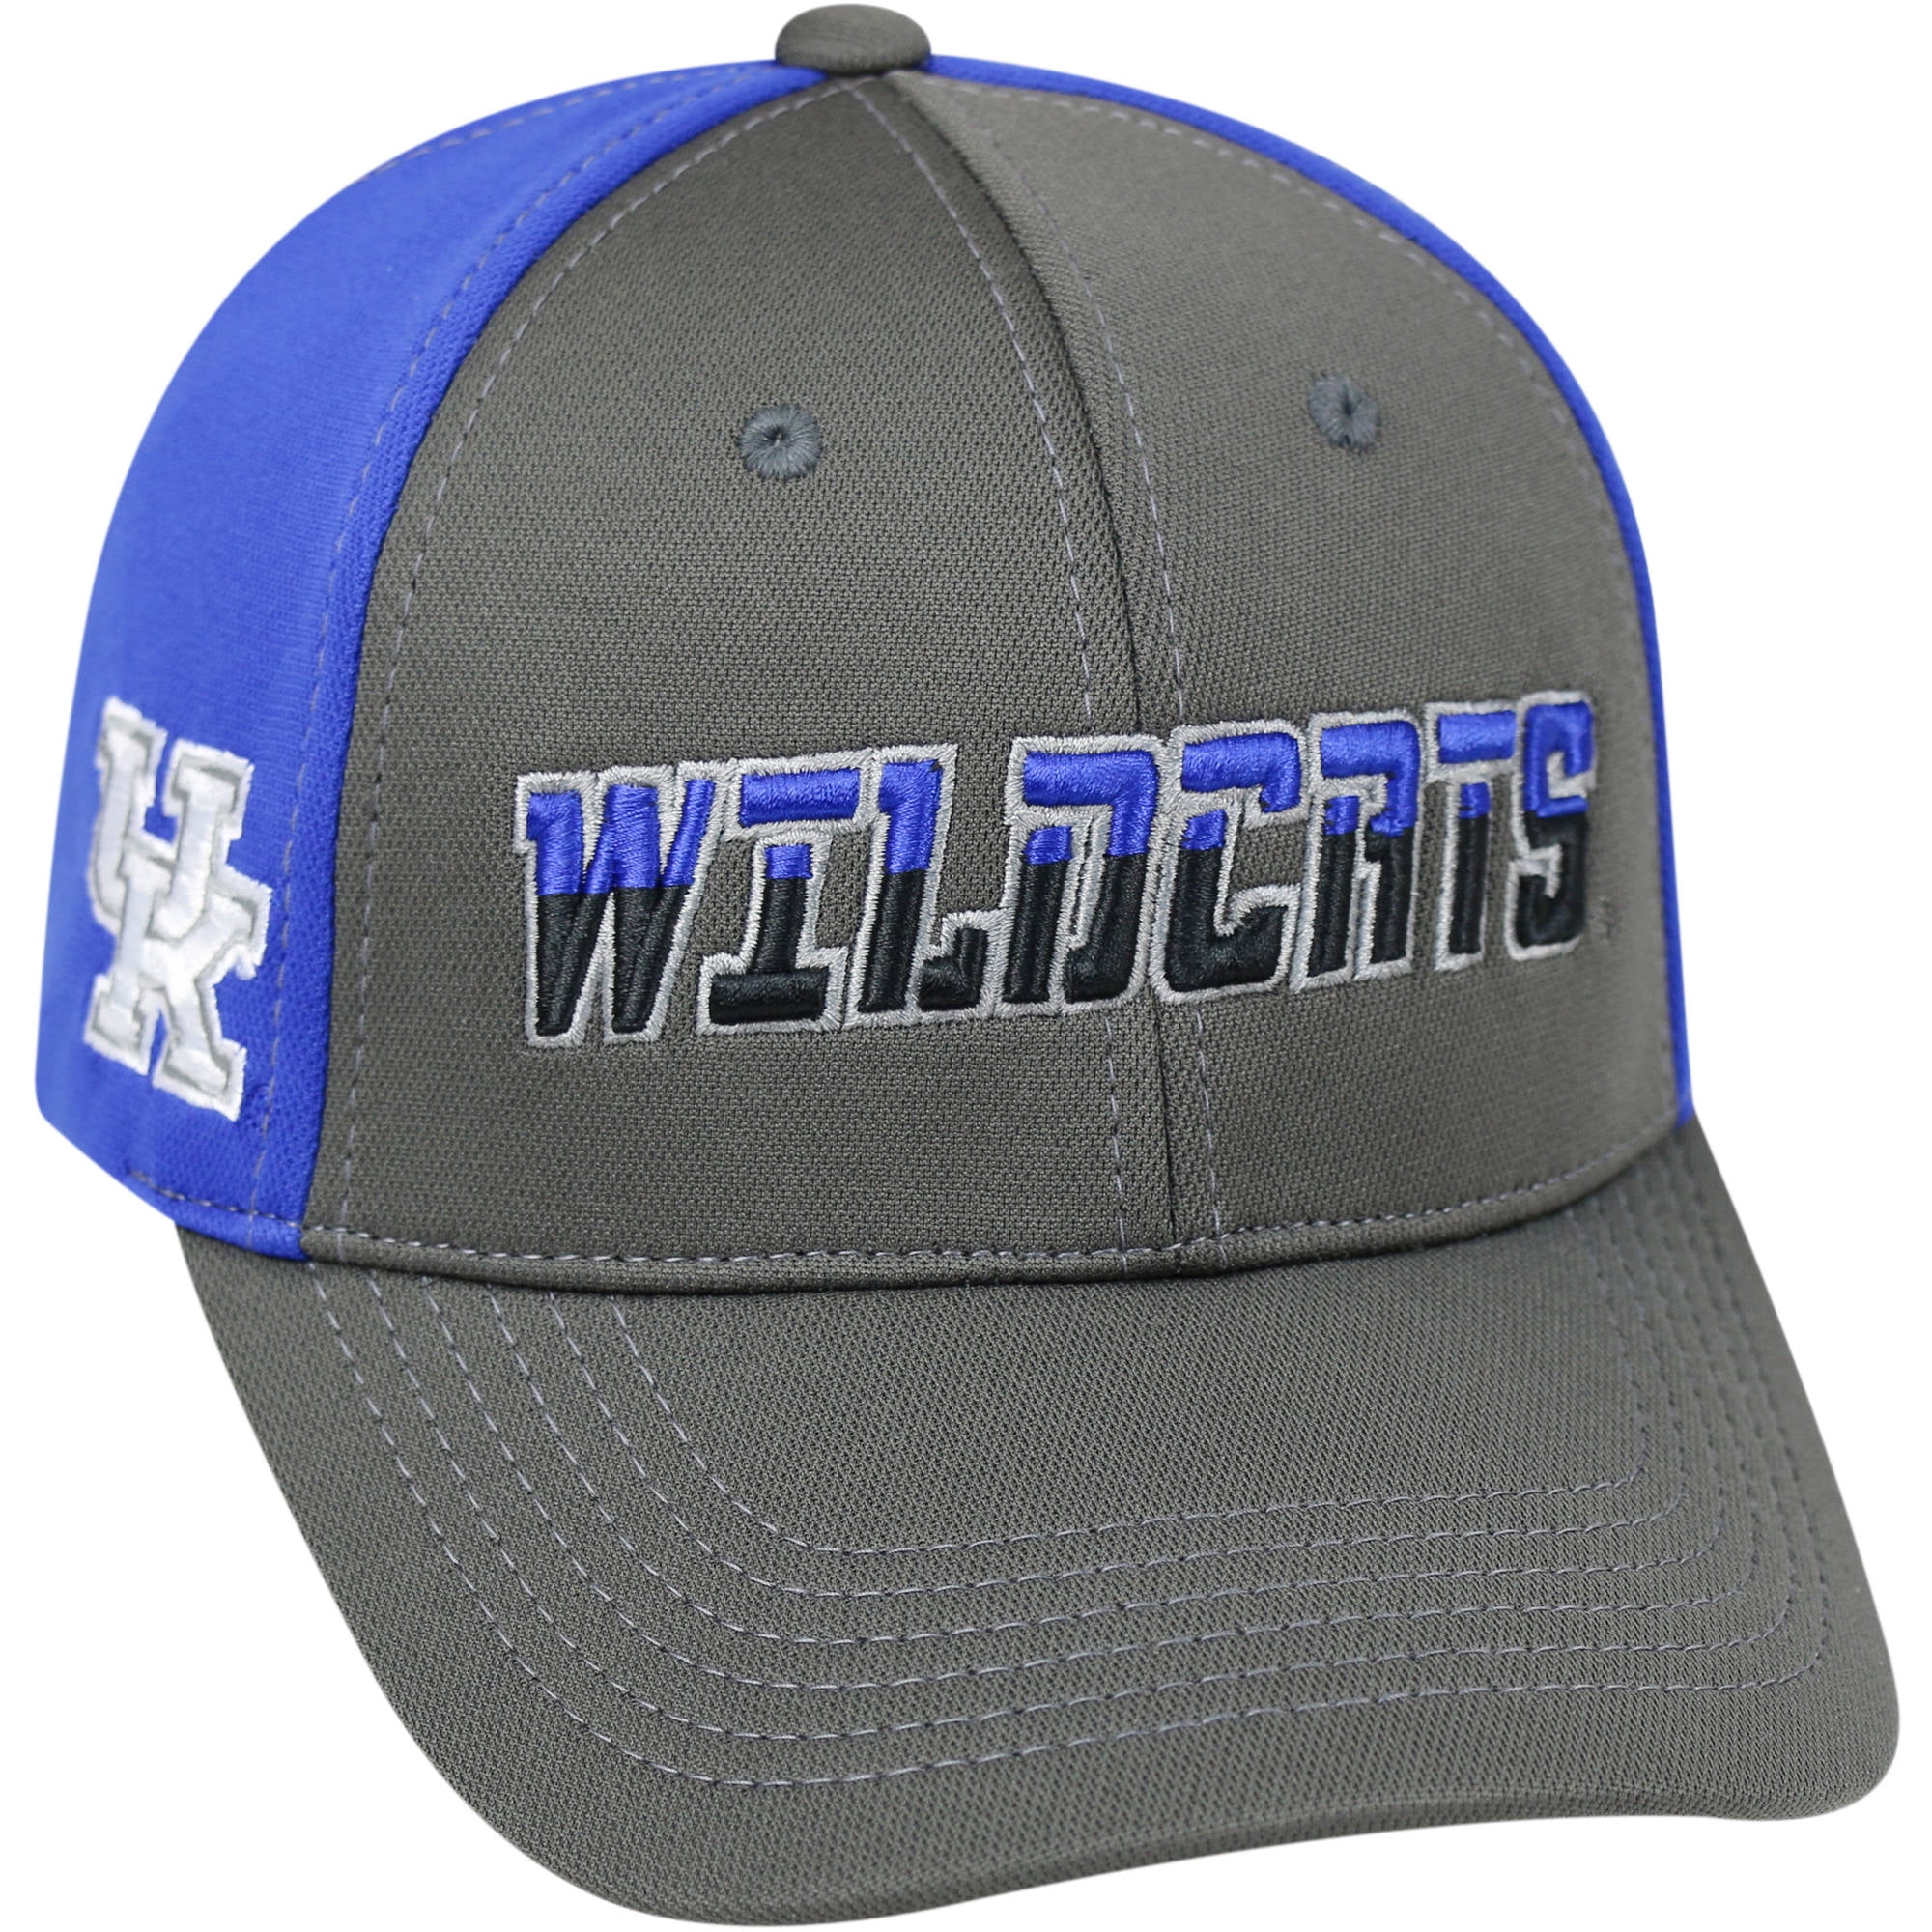 Collegiate Headwear Solid Grey University of Kentucky Wildcats Logo Adjustable Hat